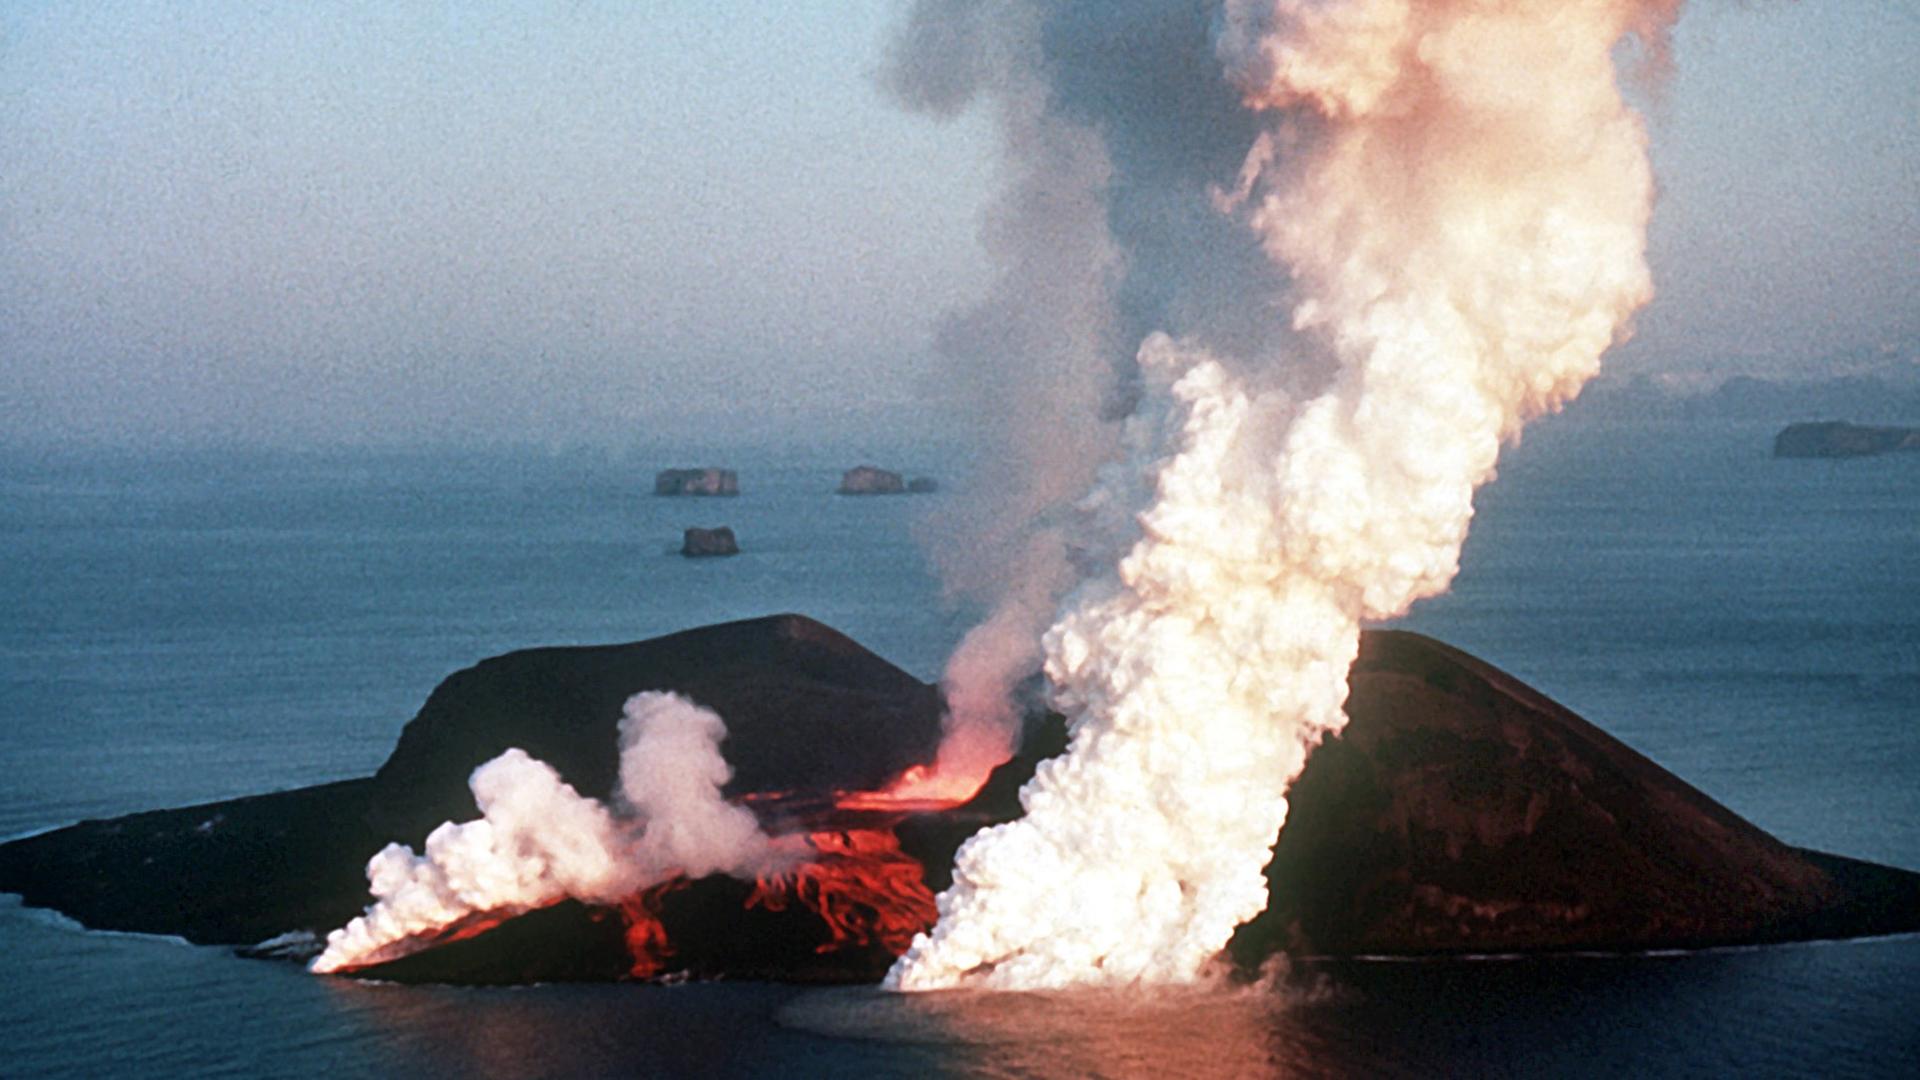 Dampfwolken steigen von der Vulkaninsel Surtsey in die Luft. Die Insel entstand 1963 durch einen Vulkanausbruch unter Wasser und liegt rund 20 Kilometer entfernt von Heimaey, der Hauptinsel der isländischen Westmännerinseln | picture alliance / dpa / Polfoto